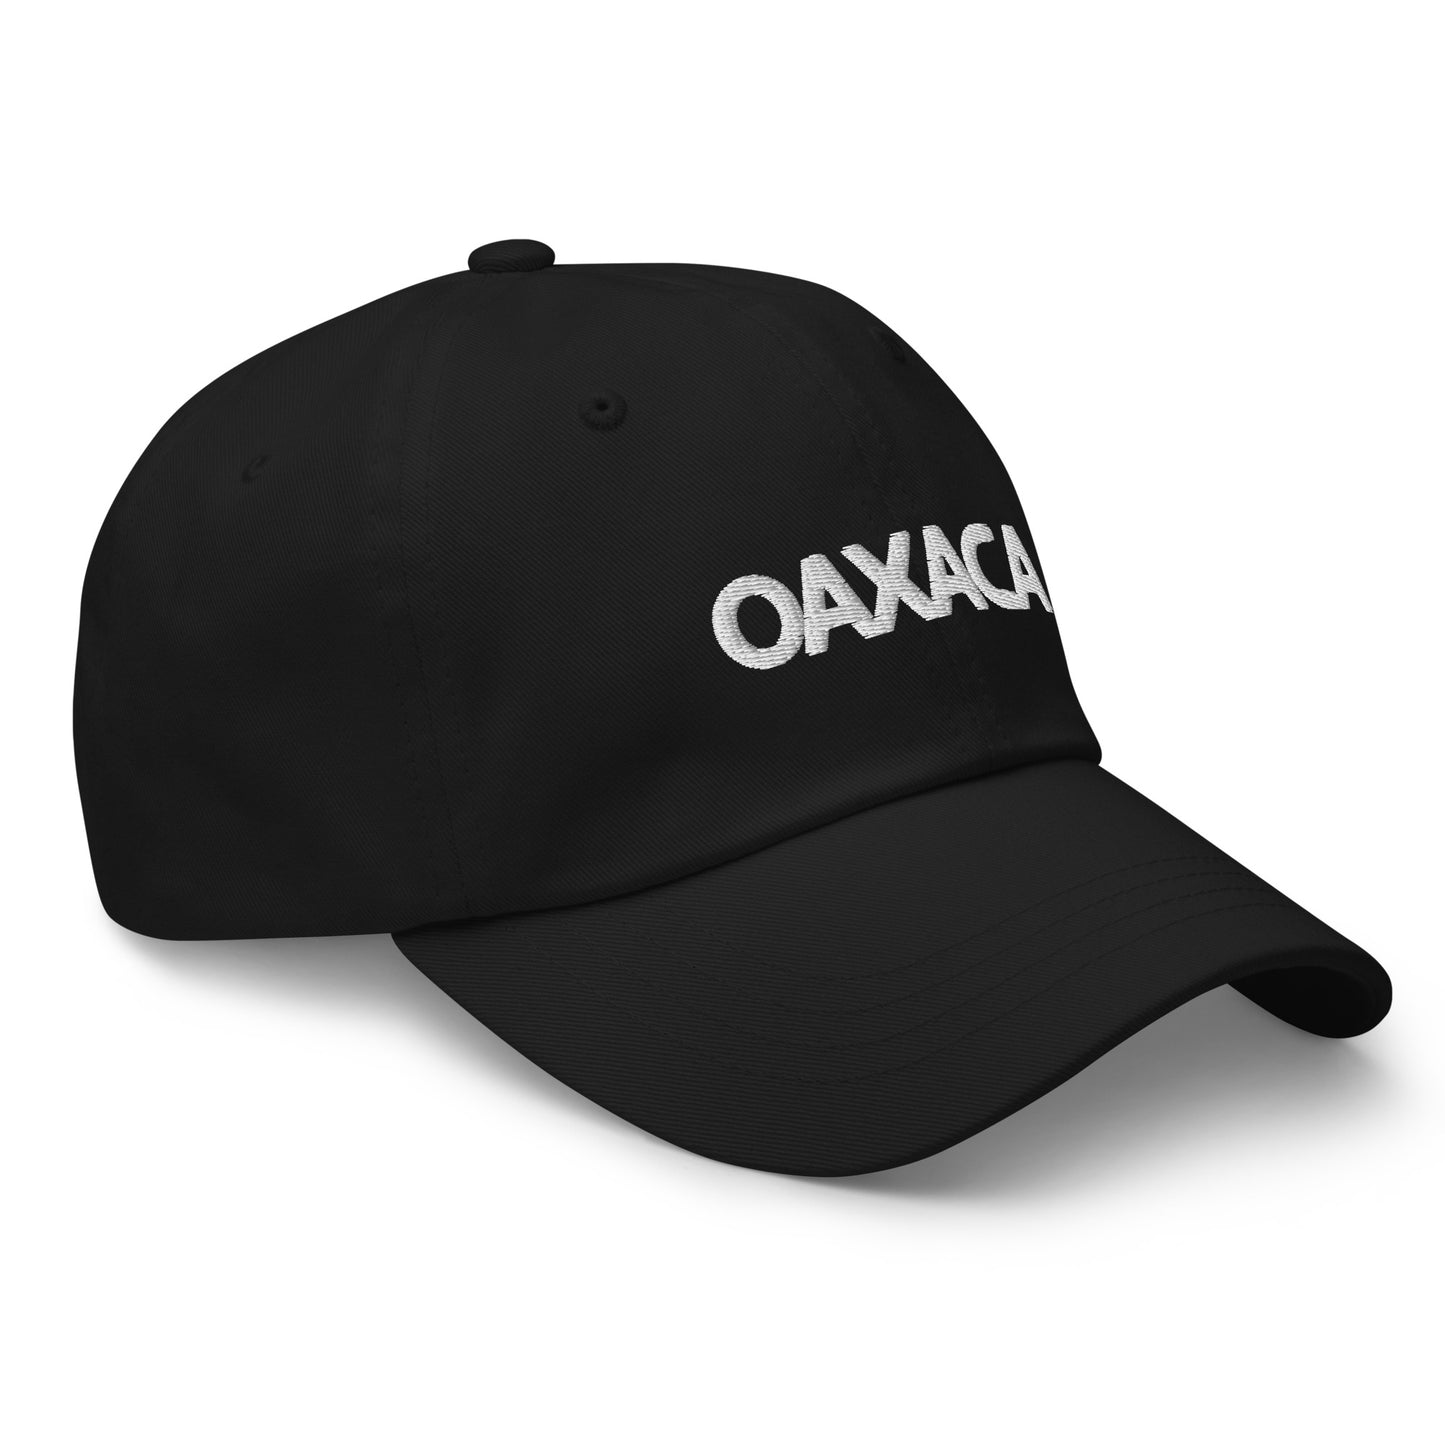 🇲🇽 Oaxaca Dad Hat